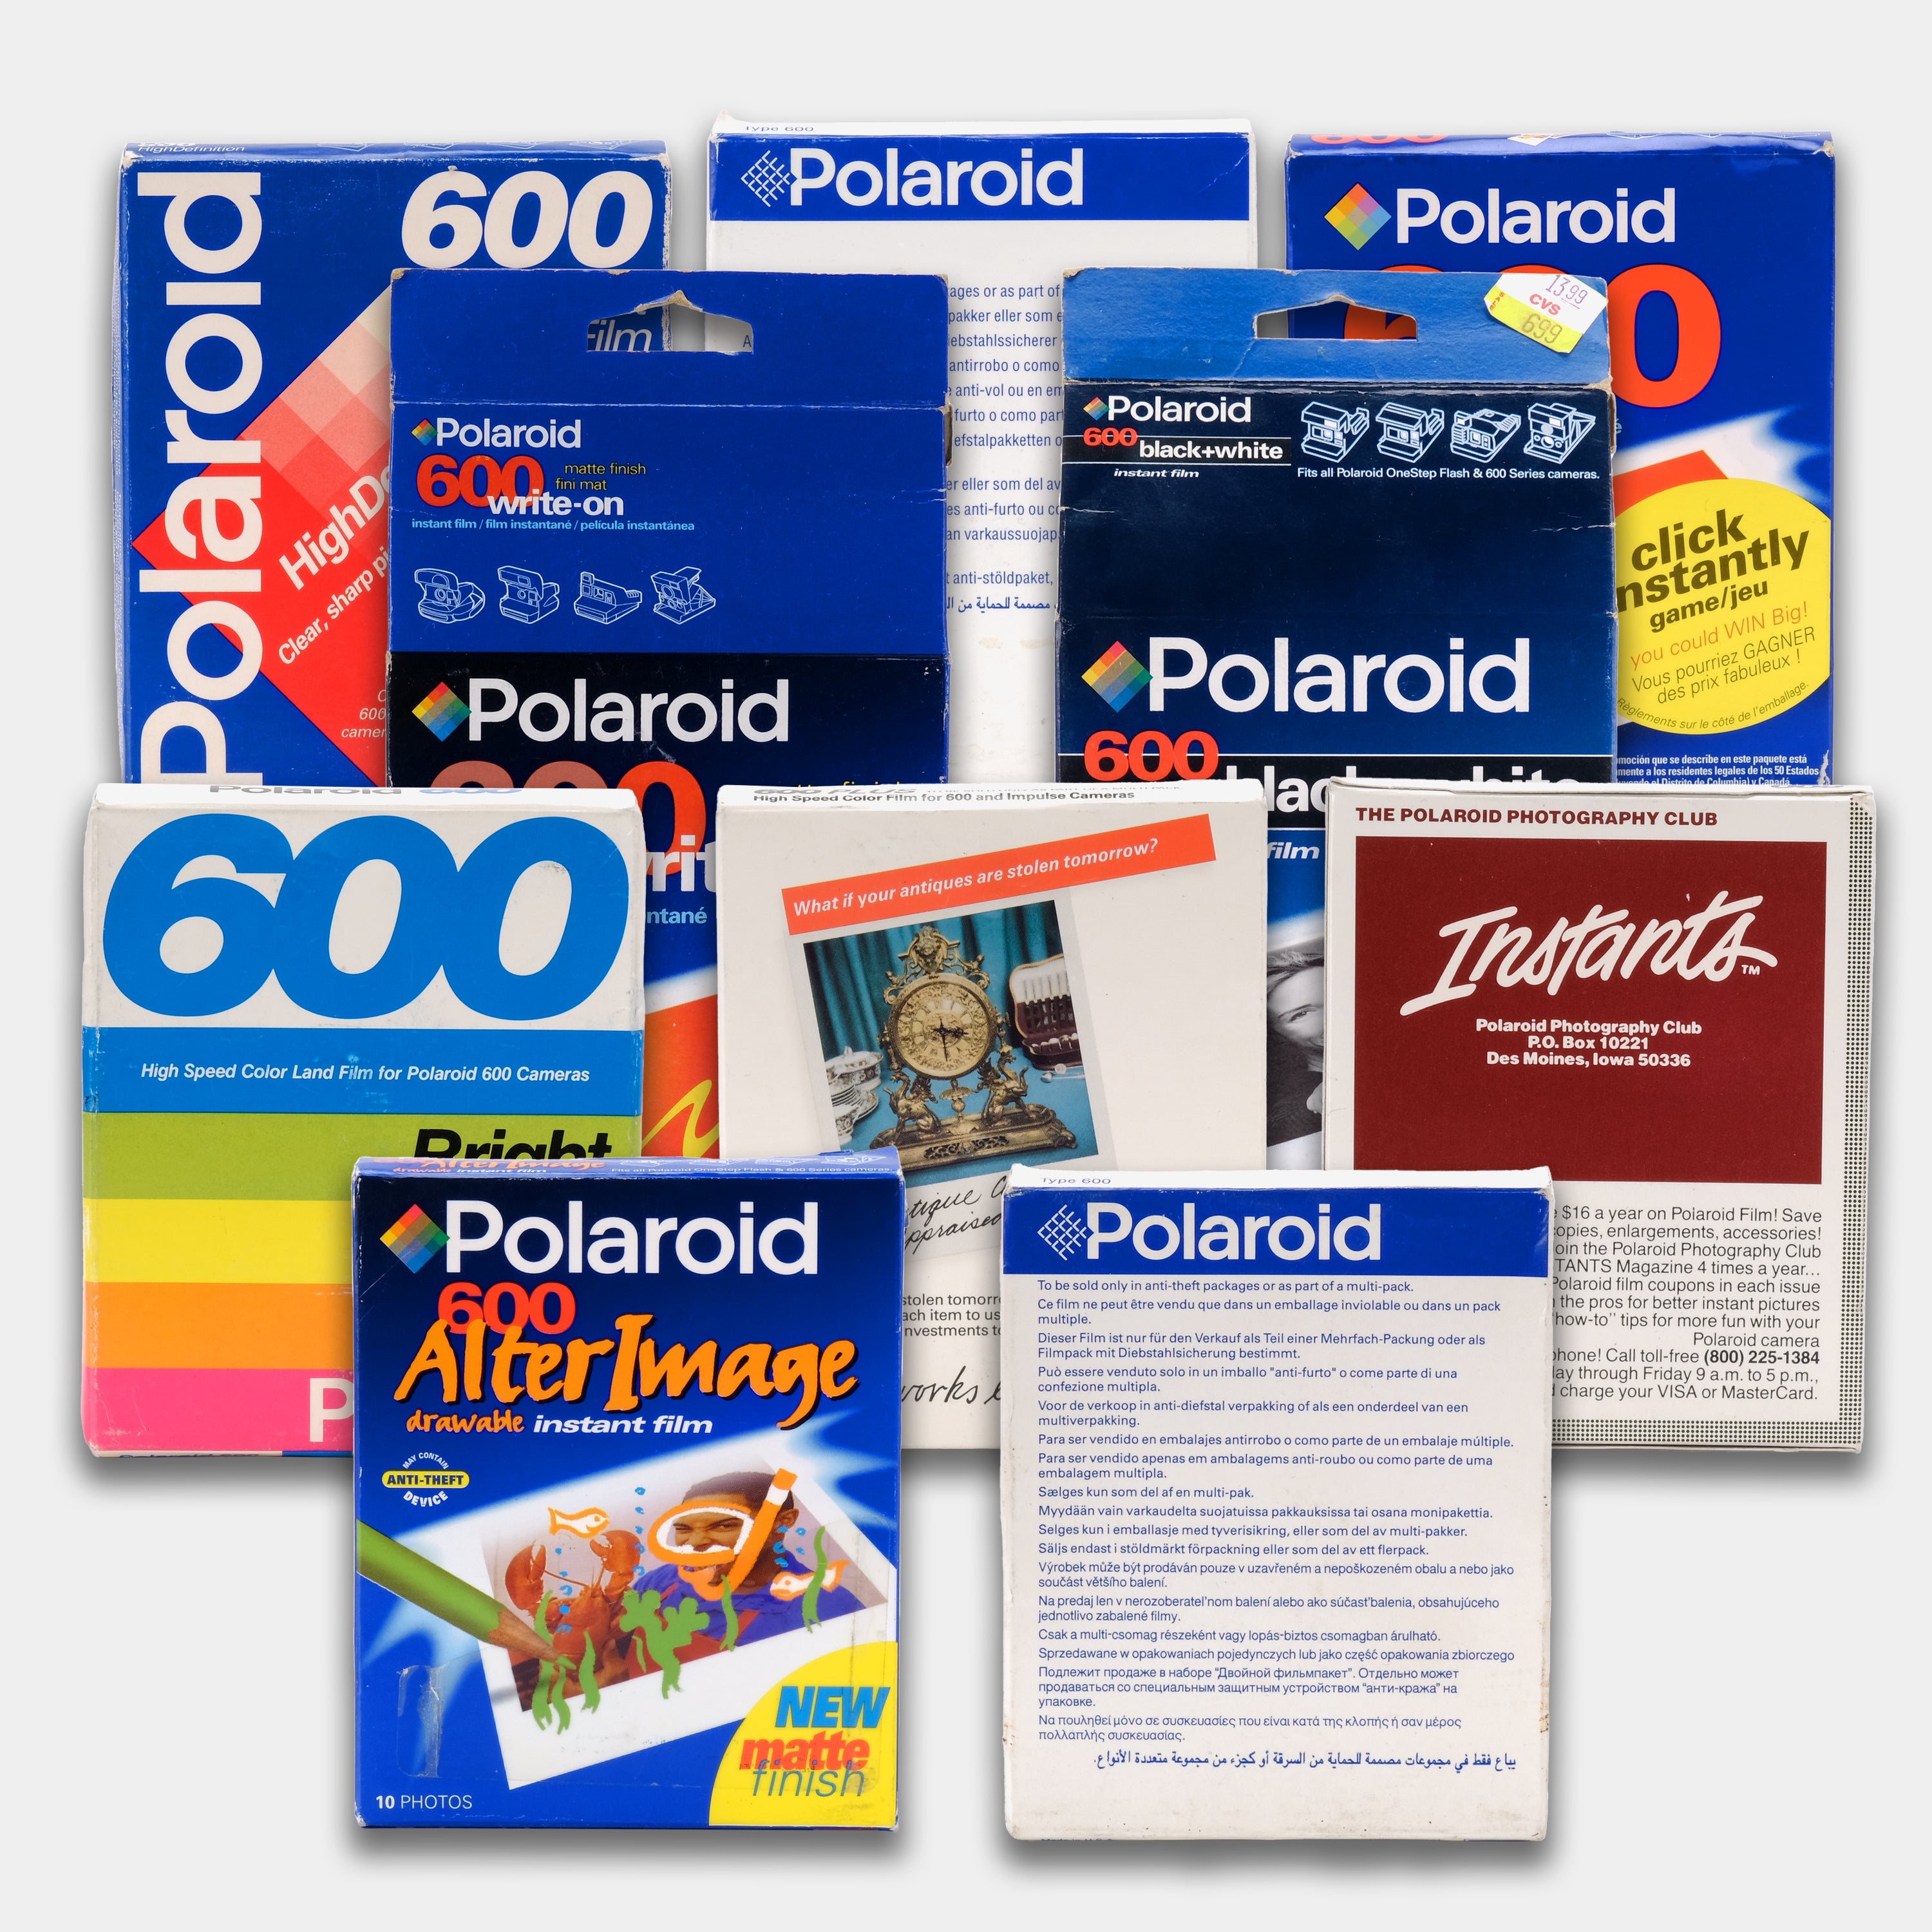 Polaroid - Papier photo instantané POLAROID Film i-Type couleur